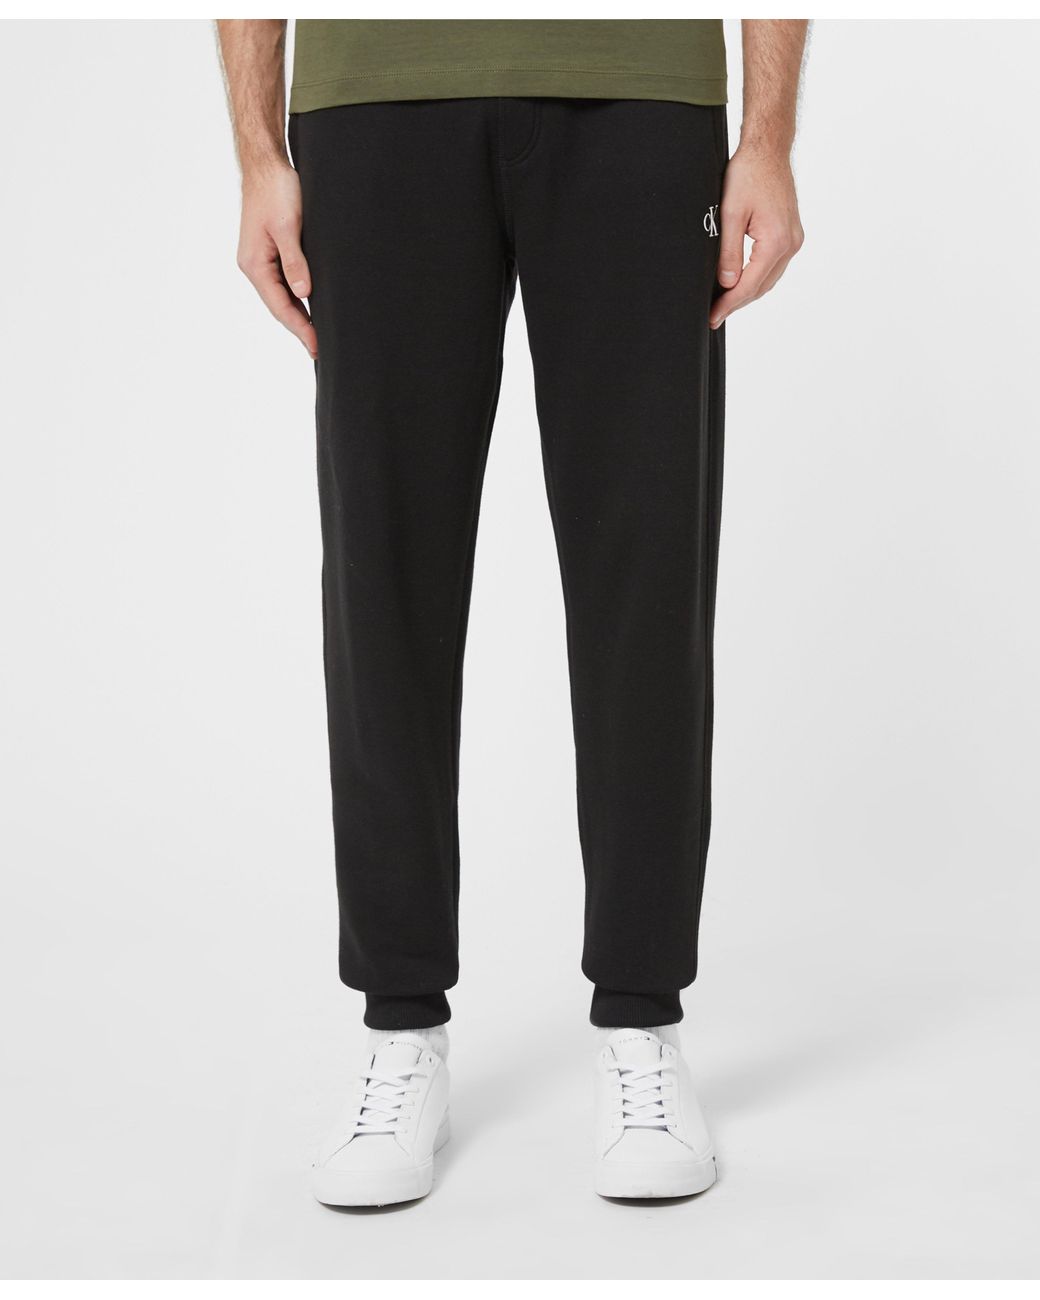 Calvin Klein Essential Fleece Pants in Black for Men - Lyst